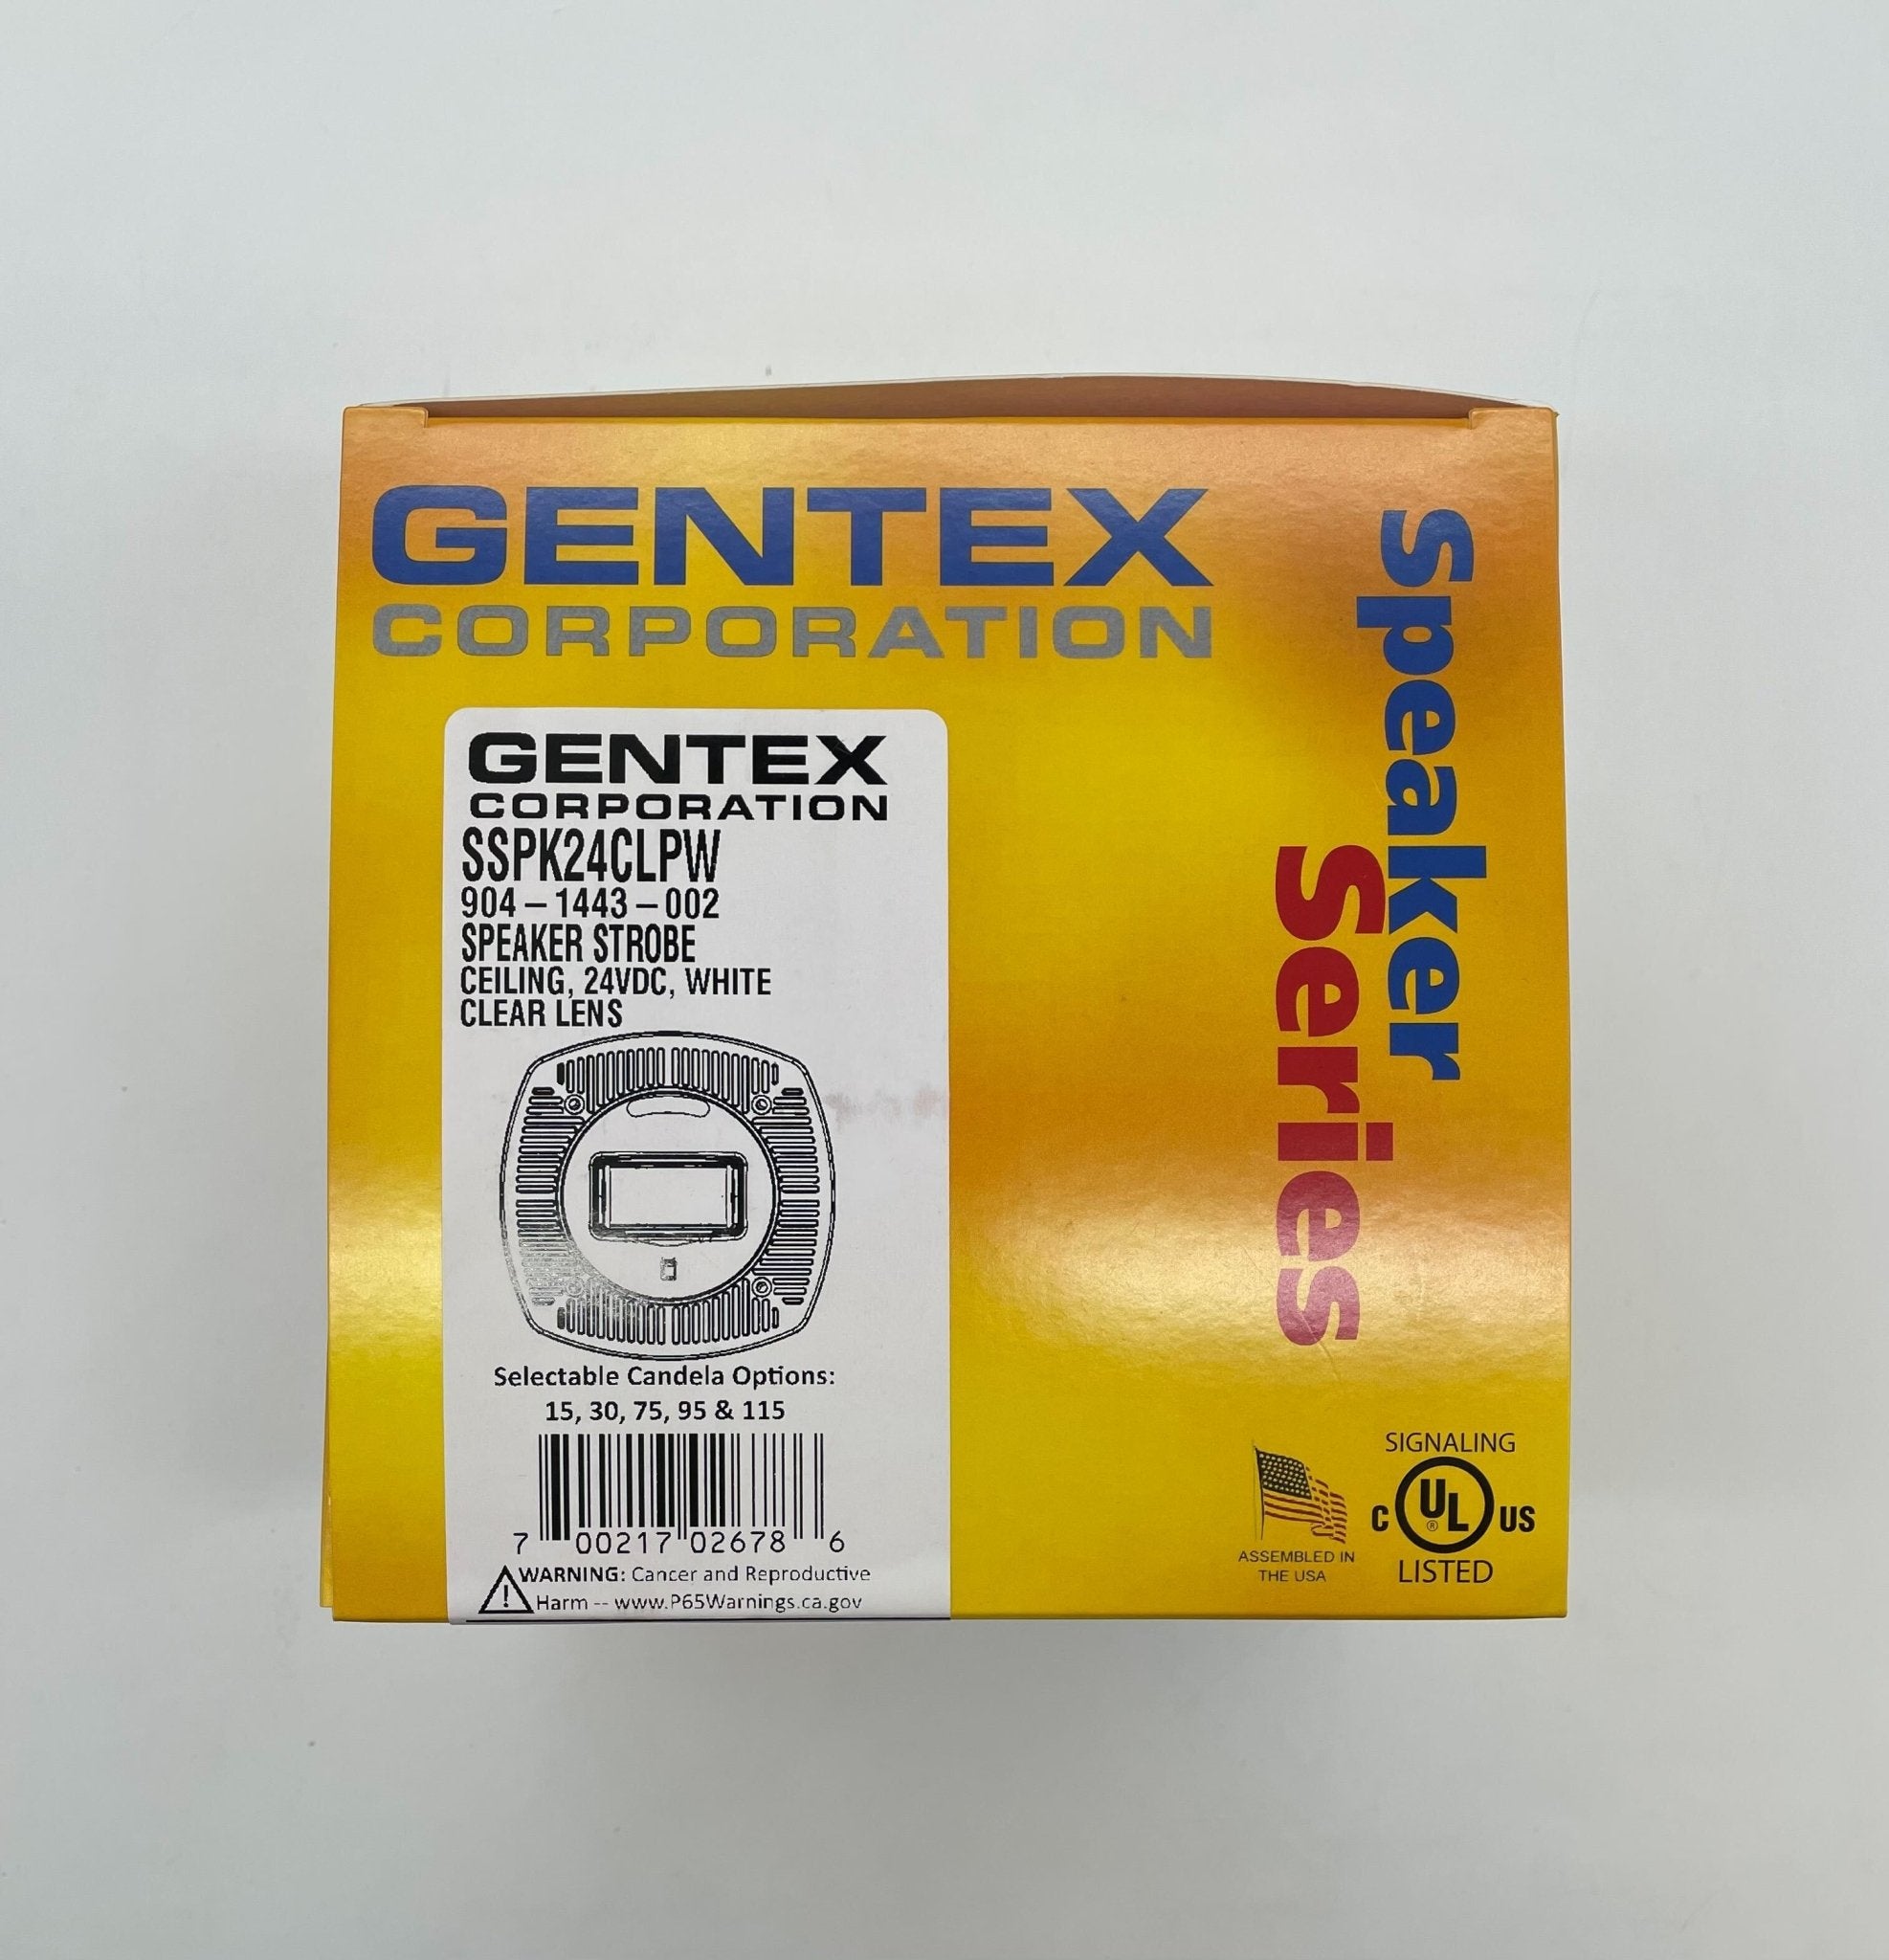 Gentex SSPK24CLPW - The Fire Alarm Supplier